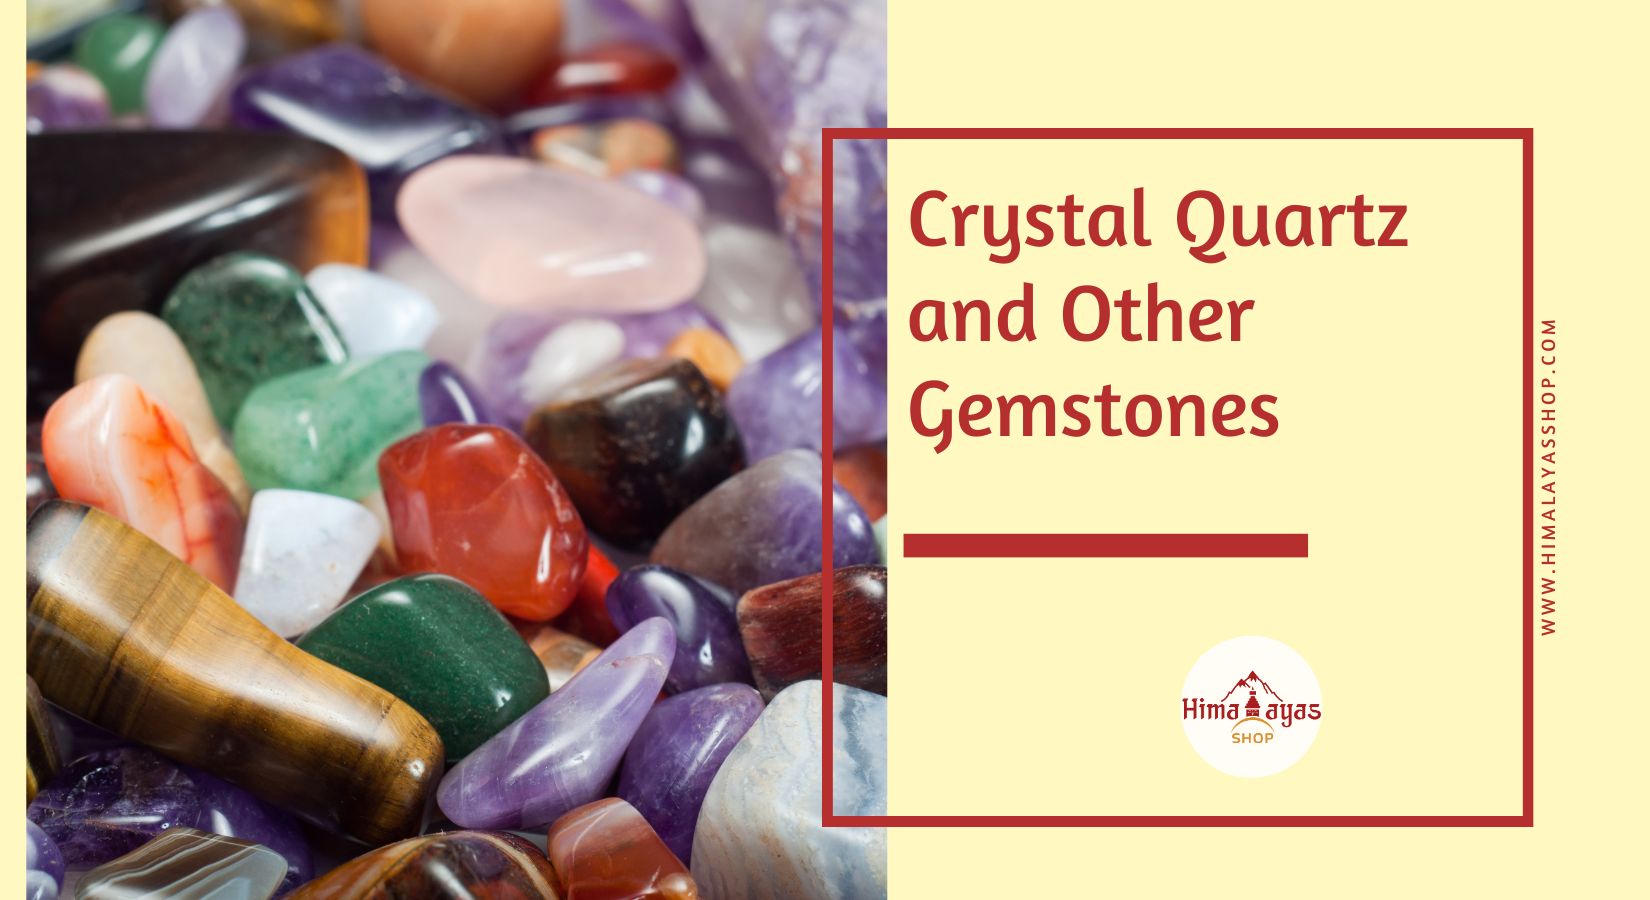 Crystal Quartz and Gemstones